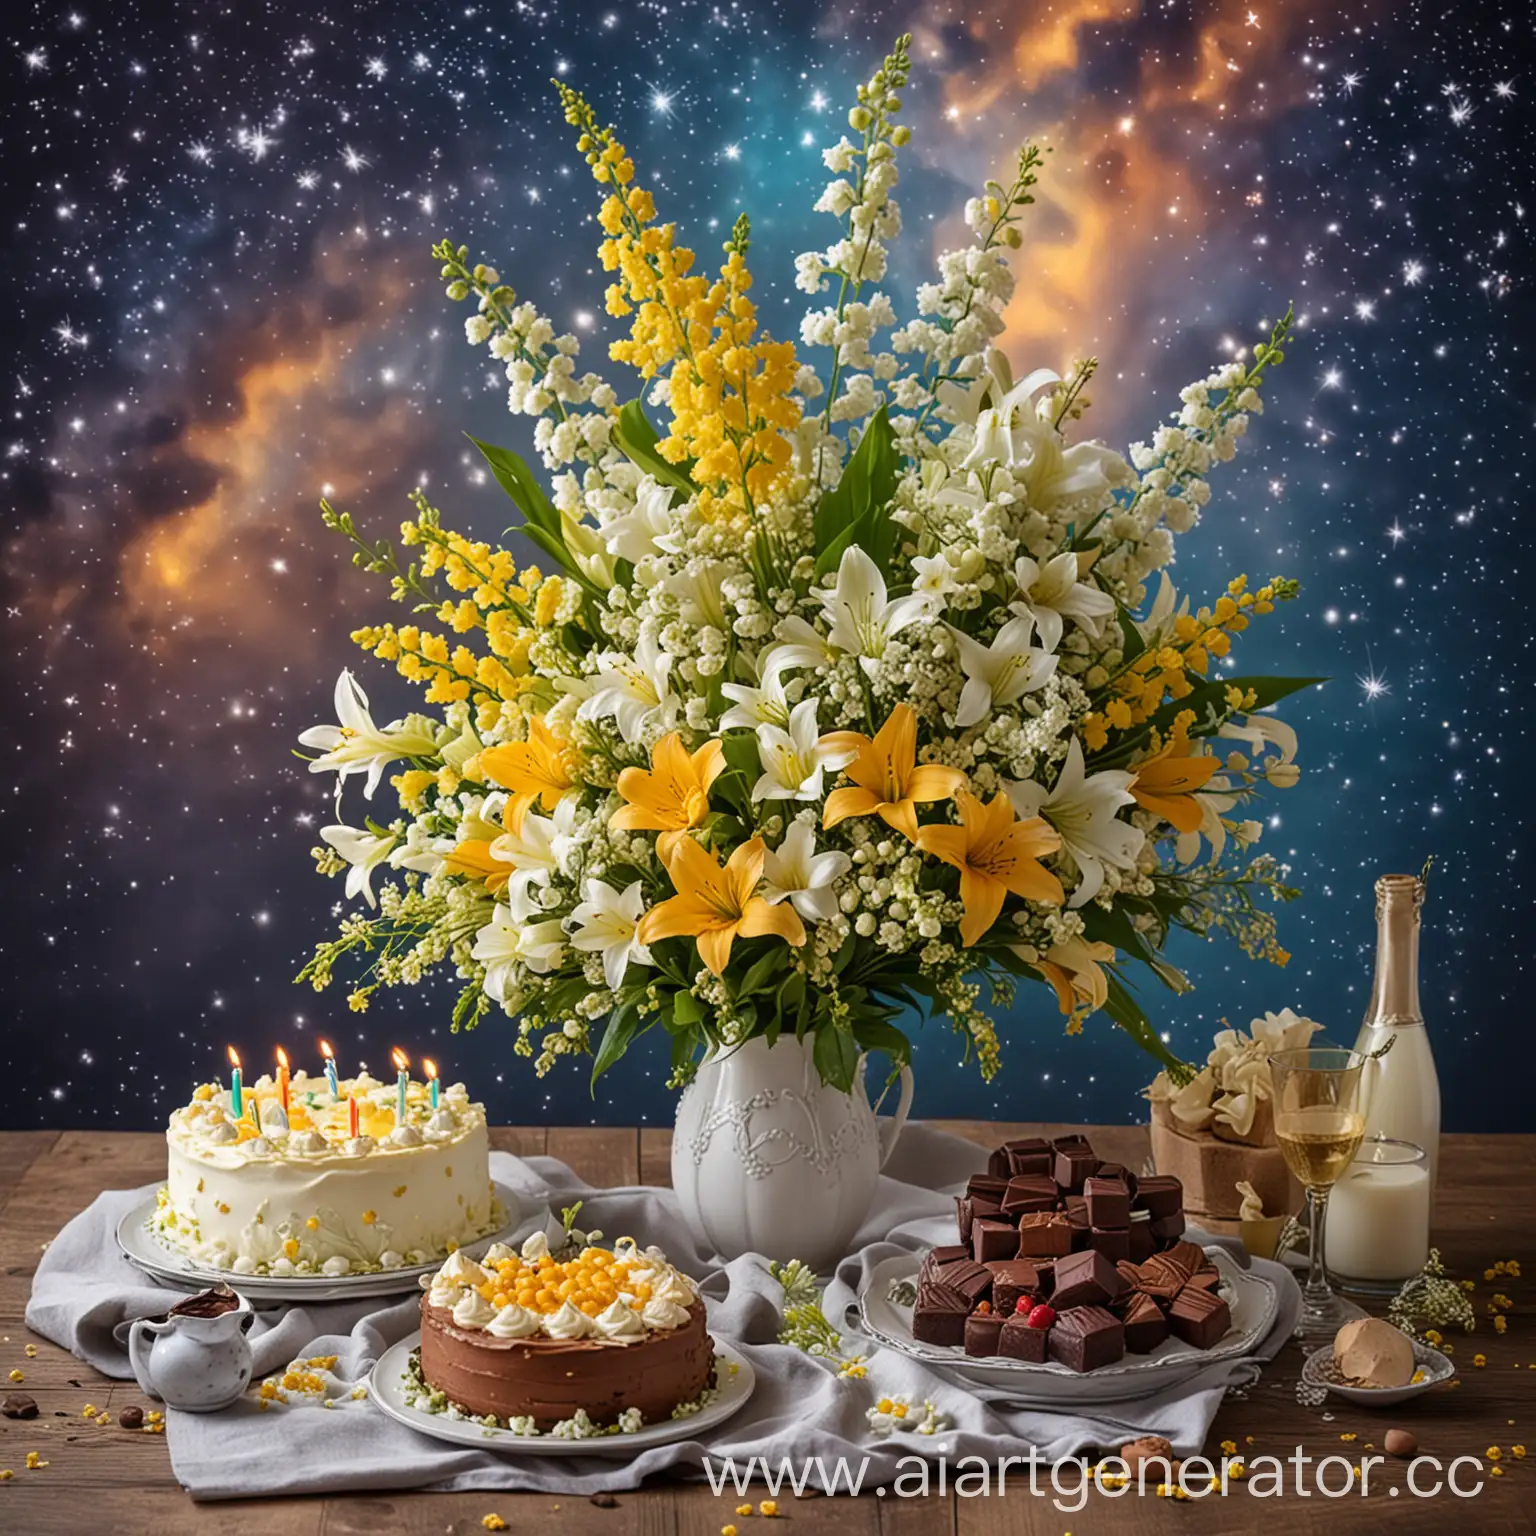 Букет колокольчиков и ландышей, мимоза, праздничный торт, шоколад и конфеты, красивое небо и звезды

